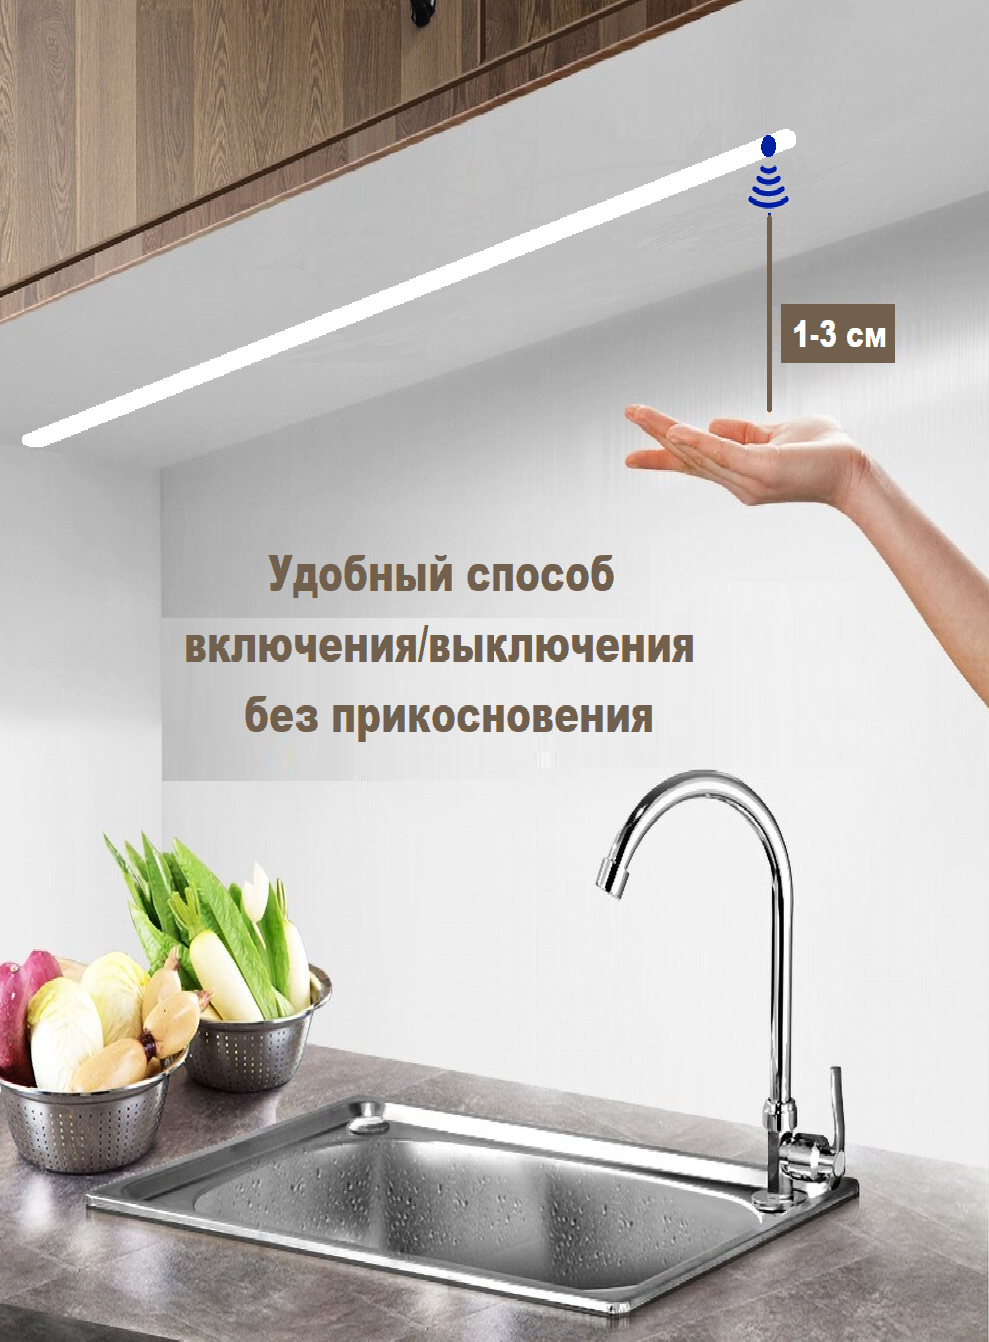 Светодиодный светильник для кухни под навесные шкафы, с включателем от взмаха руки, 160см, 4000К-дневной белый. - фотография № 4